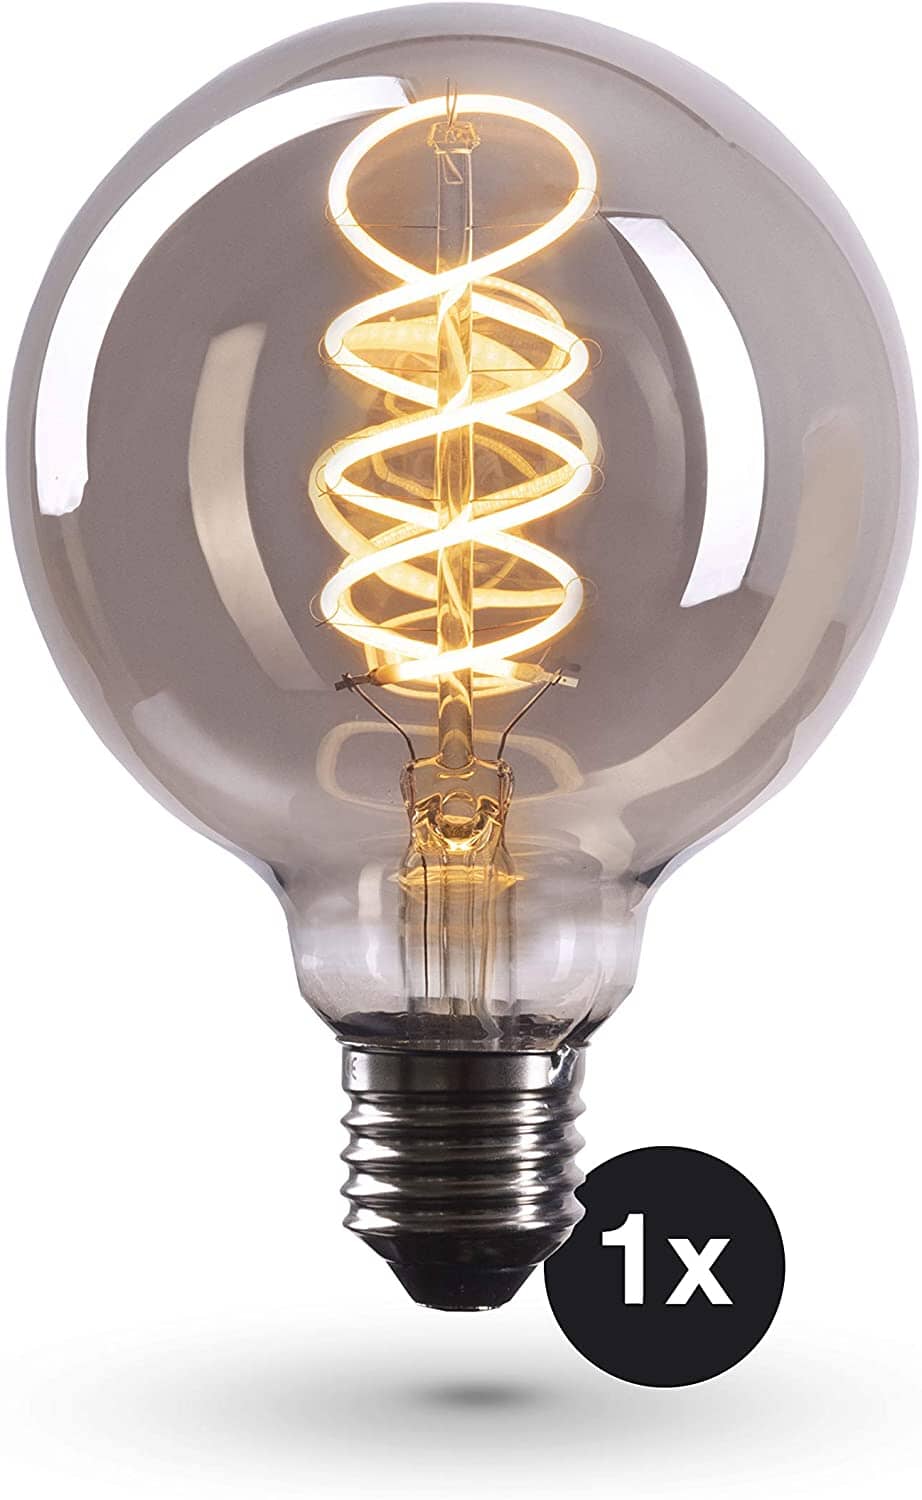 Dimmable Smoke Glass Edison Bulbs - Set of 3